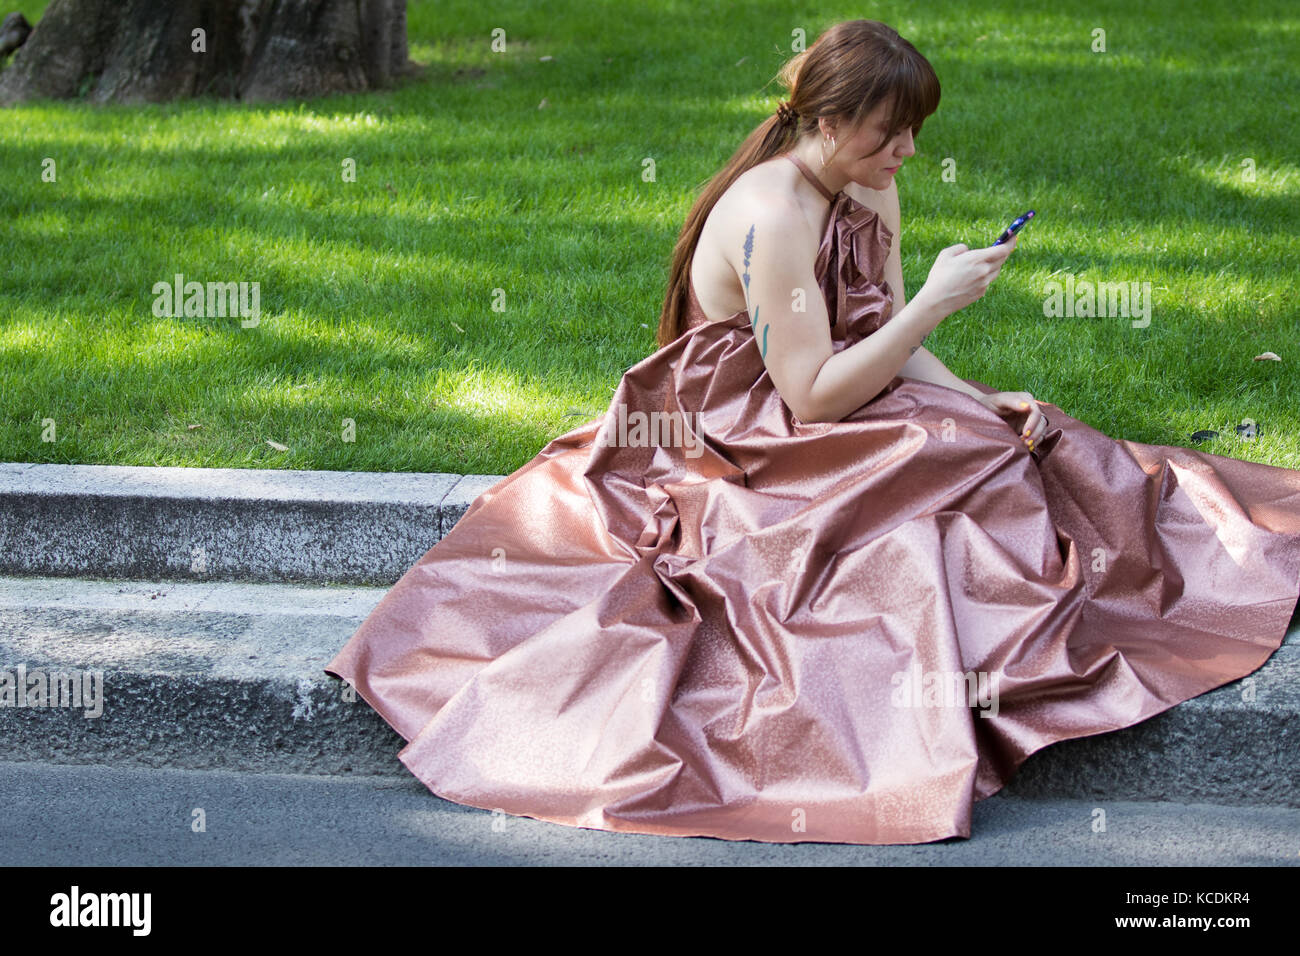 Mailand, Italien - September 22, 2017: Das Modell trägt Kleid einer Frau wie Aschenputtel, glitzernde Rosa und verwendet Ihr Smartphone während der armani Parade, pho Stockfoto